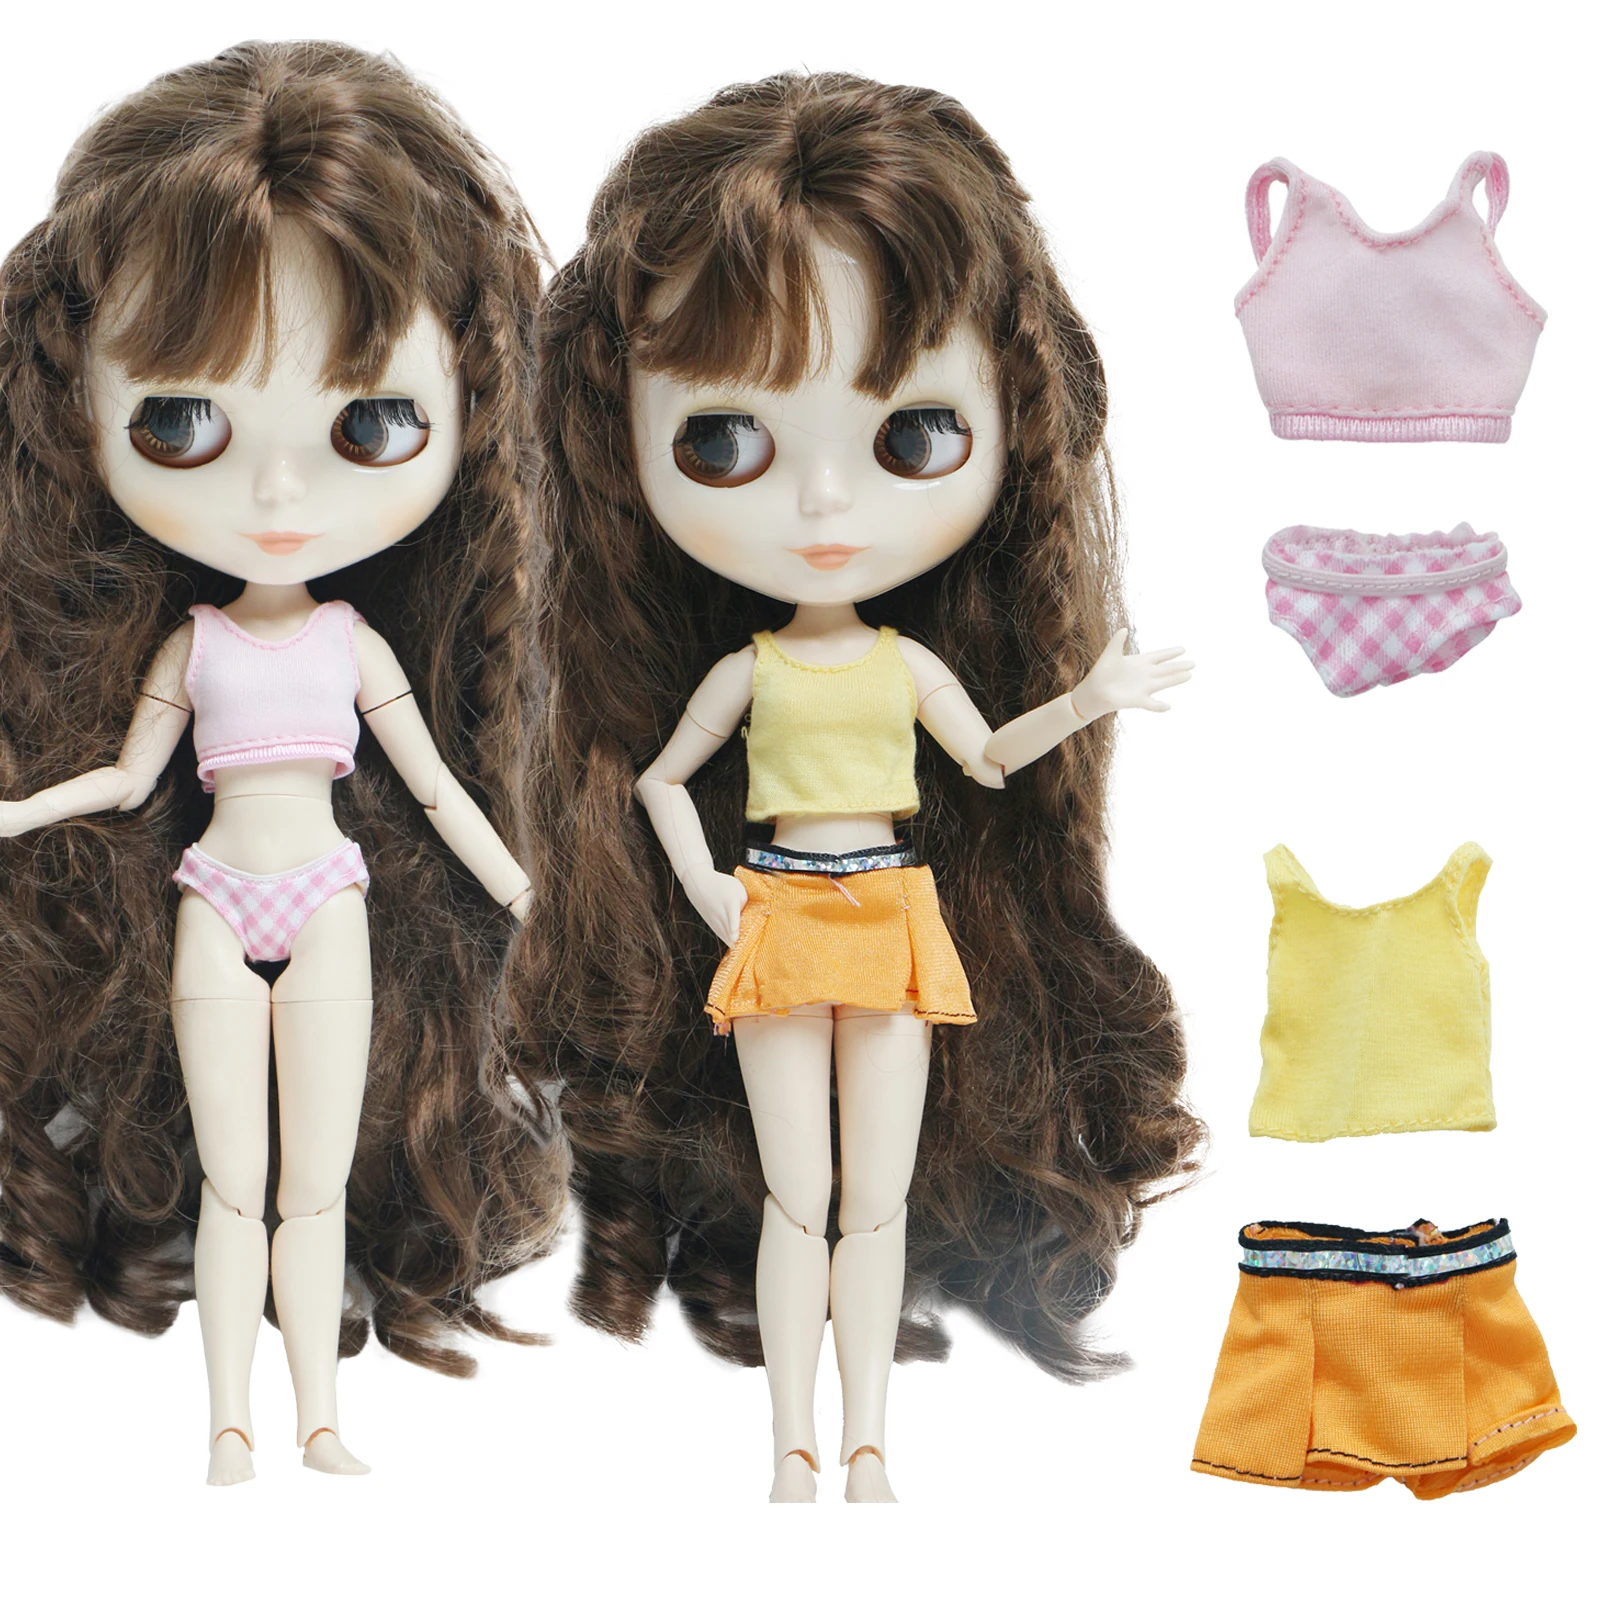 Модный Купальник для куклы BJD 2 шт./лот красочная летняя пляжная одежда бикини